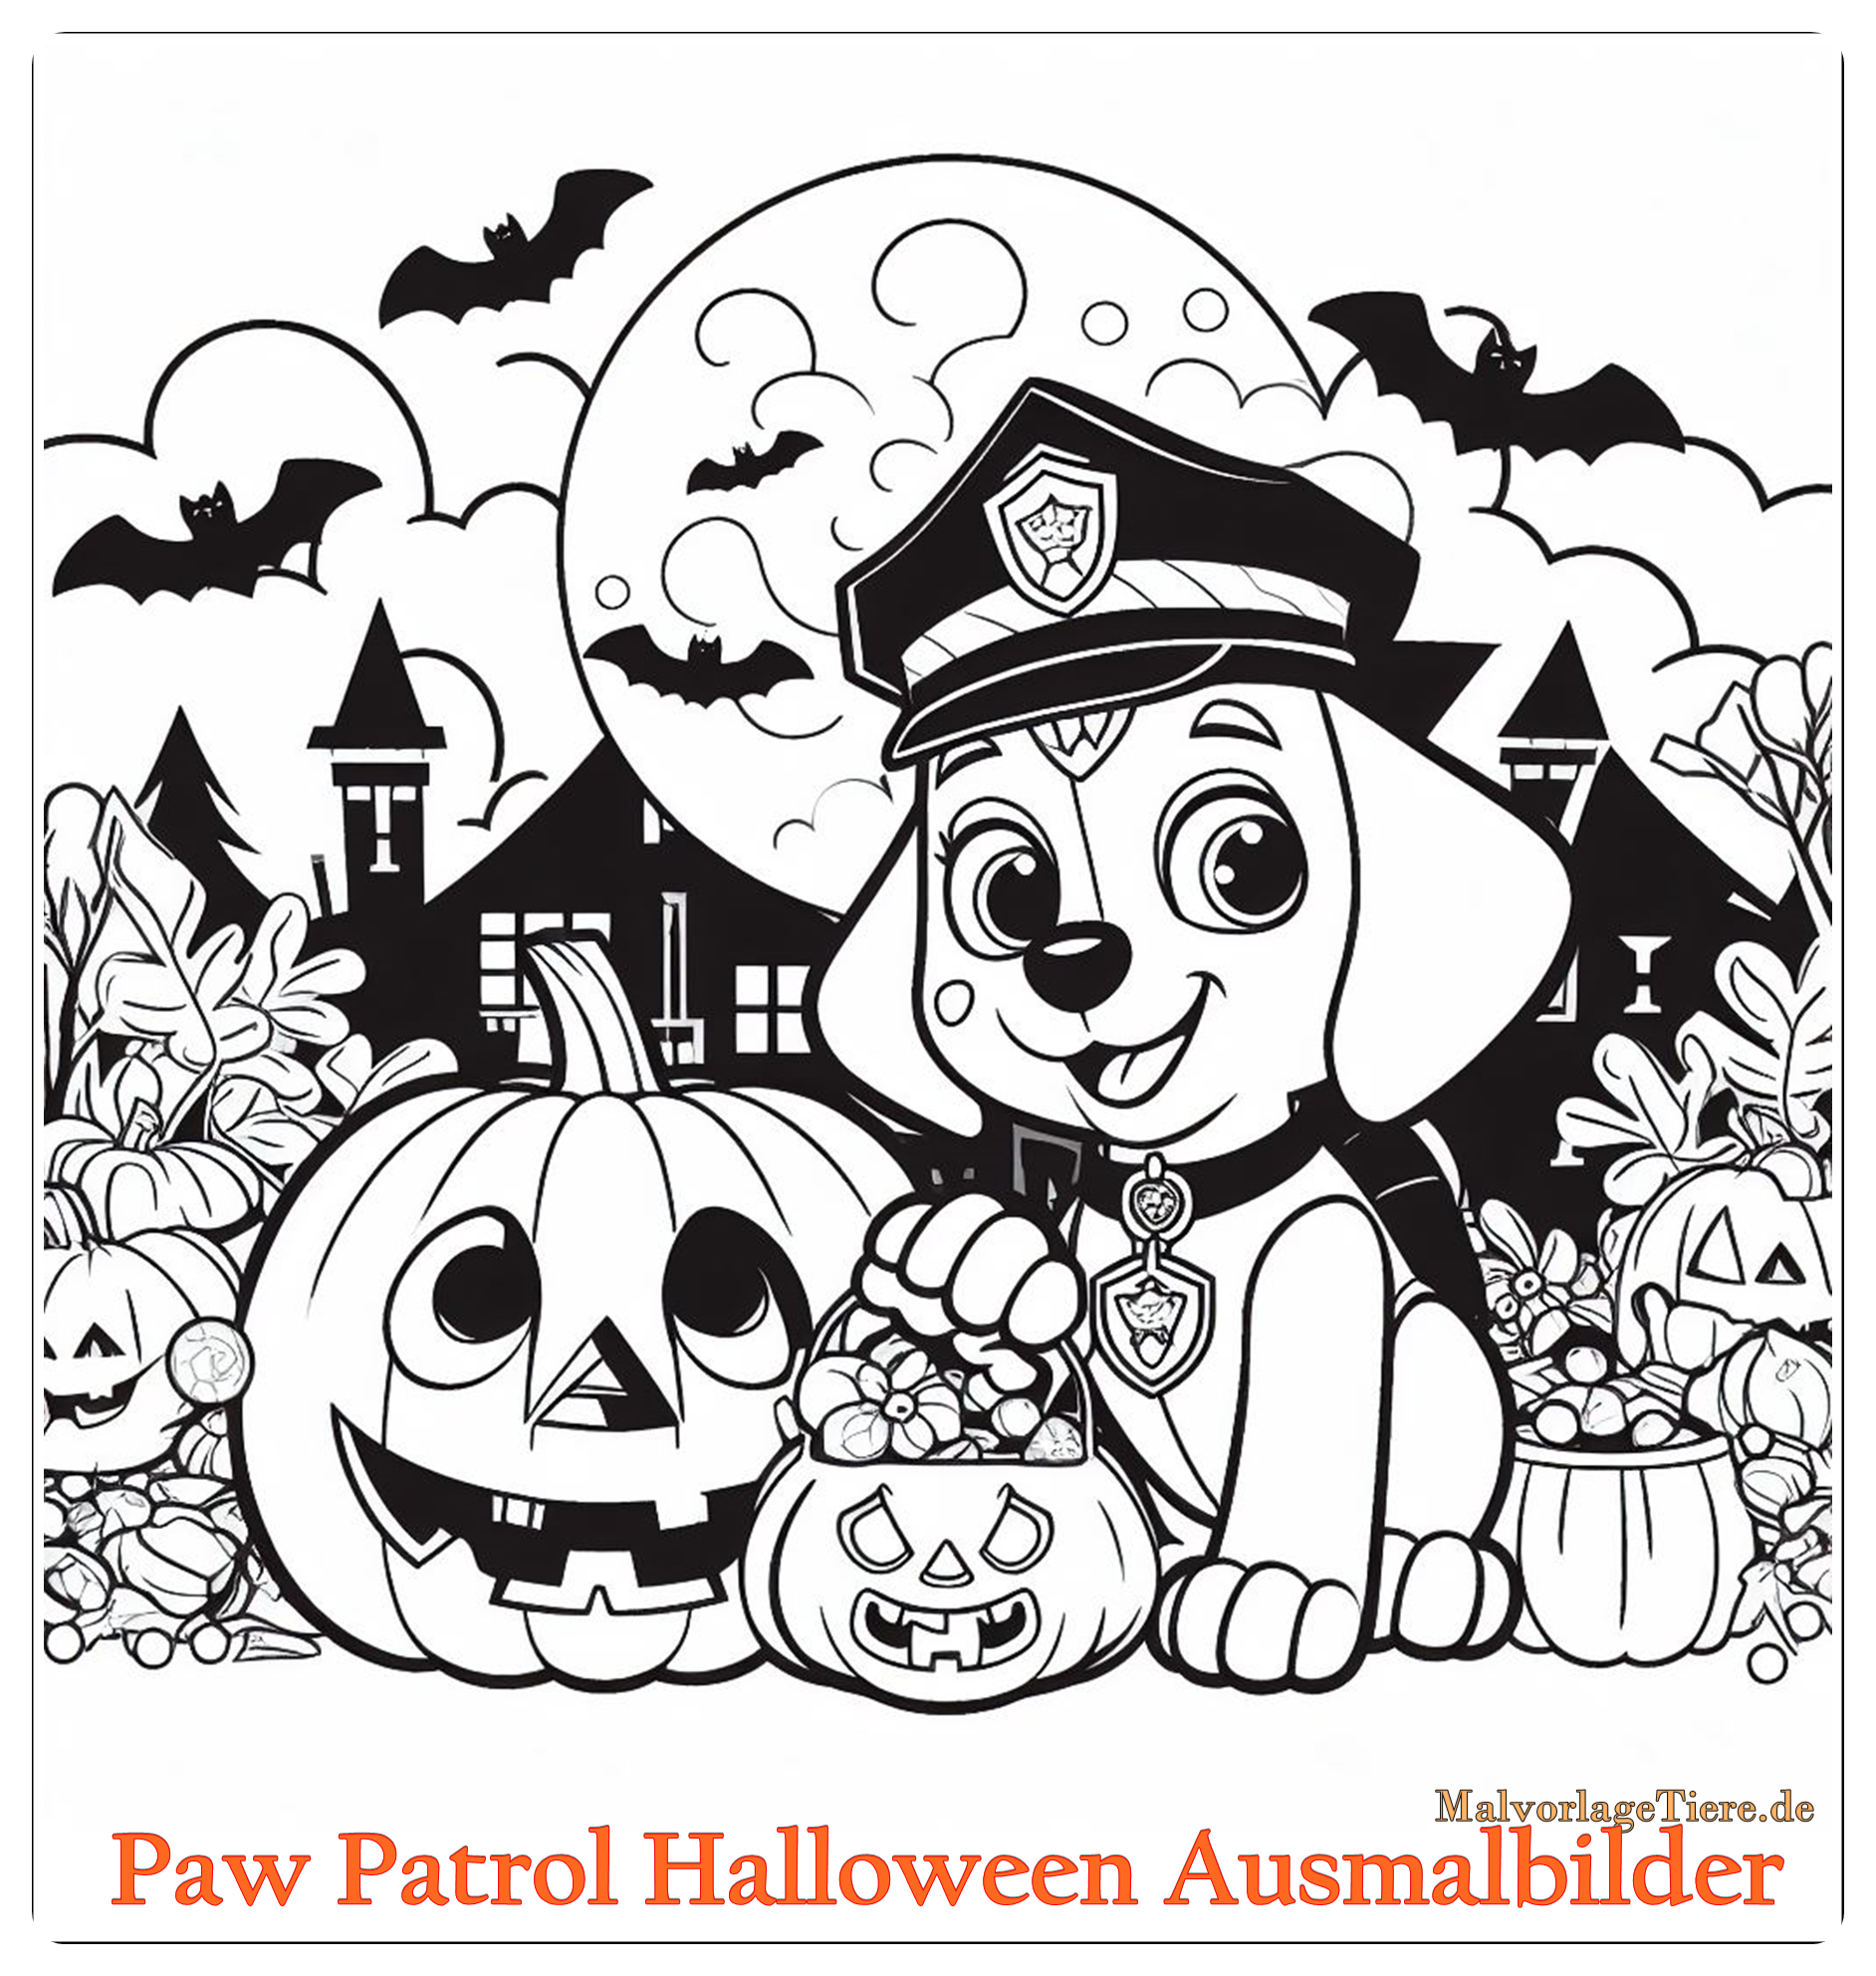 Paw Patrol Halloween Ausmalbilder 02 by malvorlagetiere.de